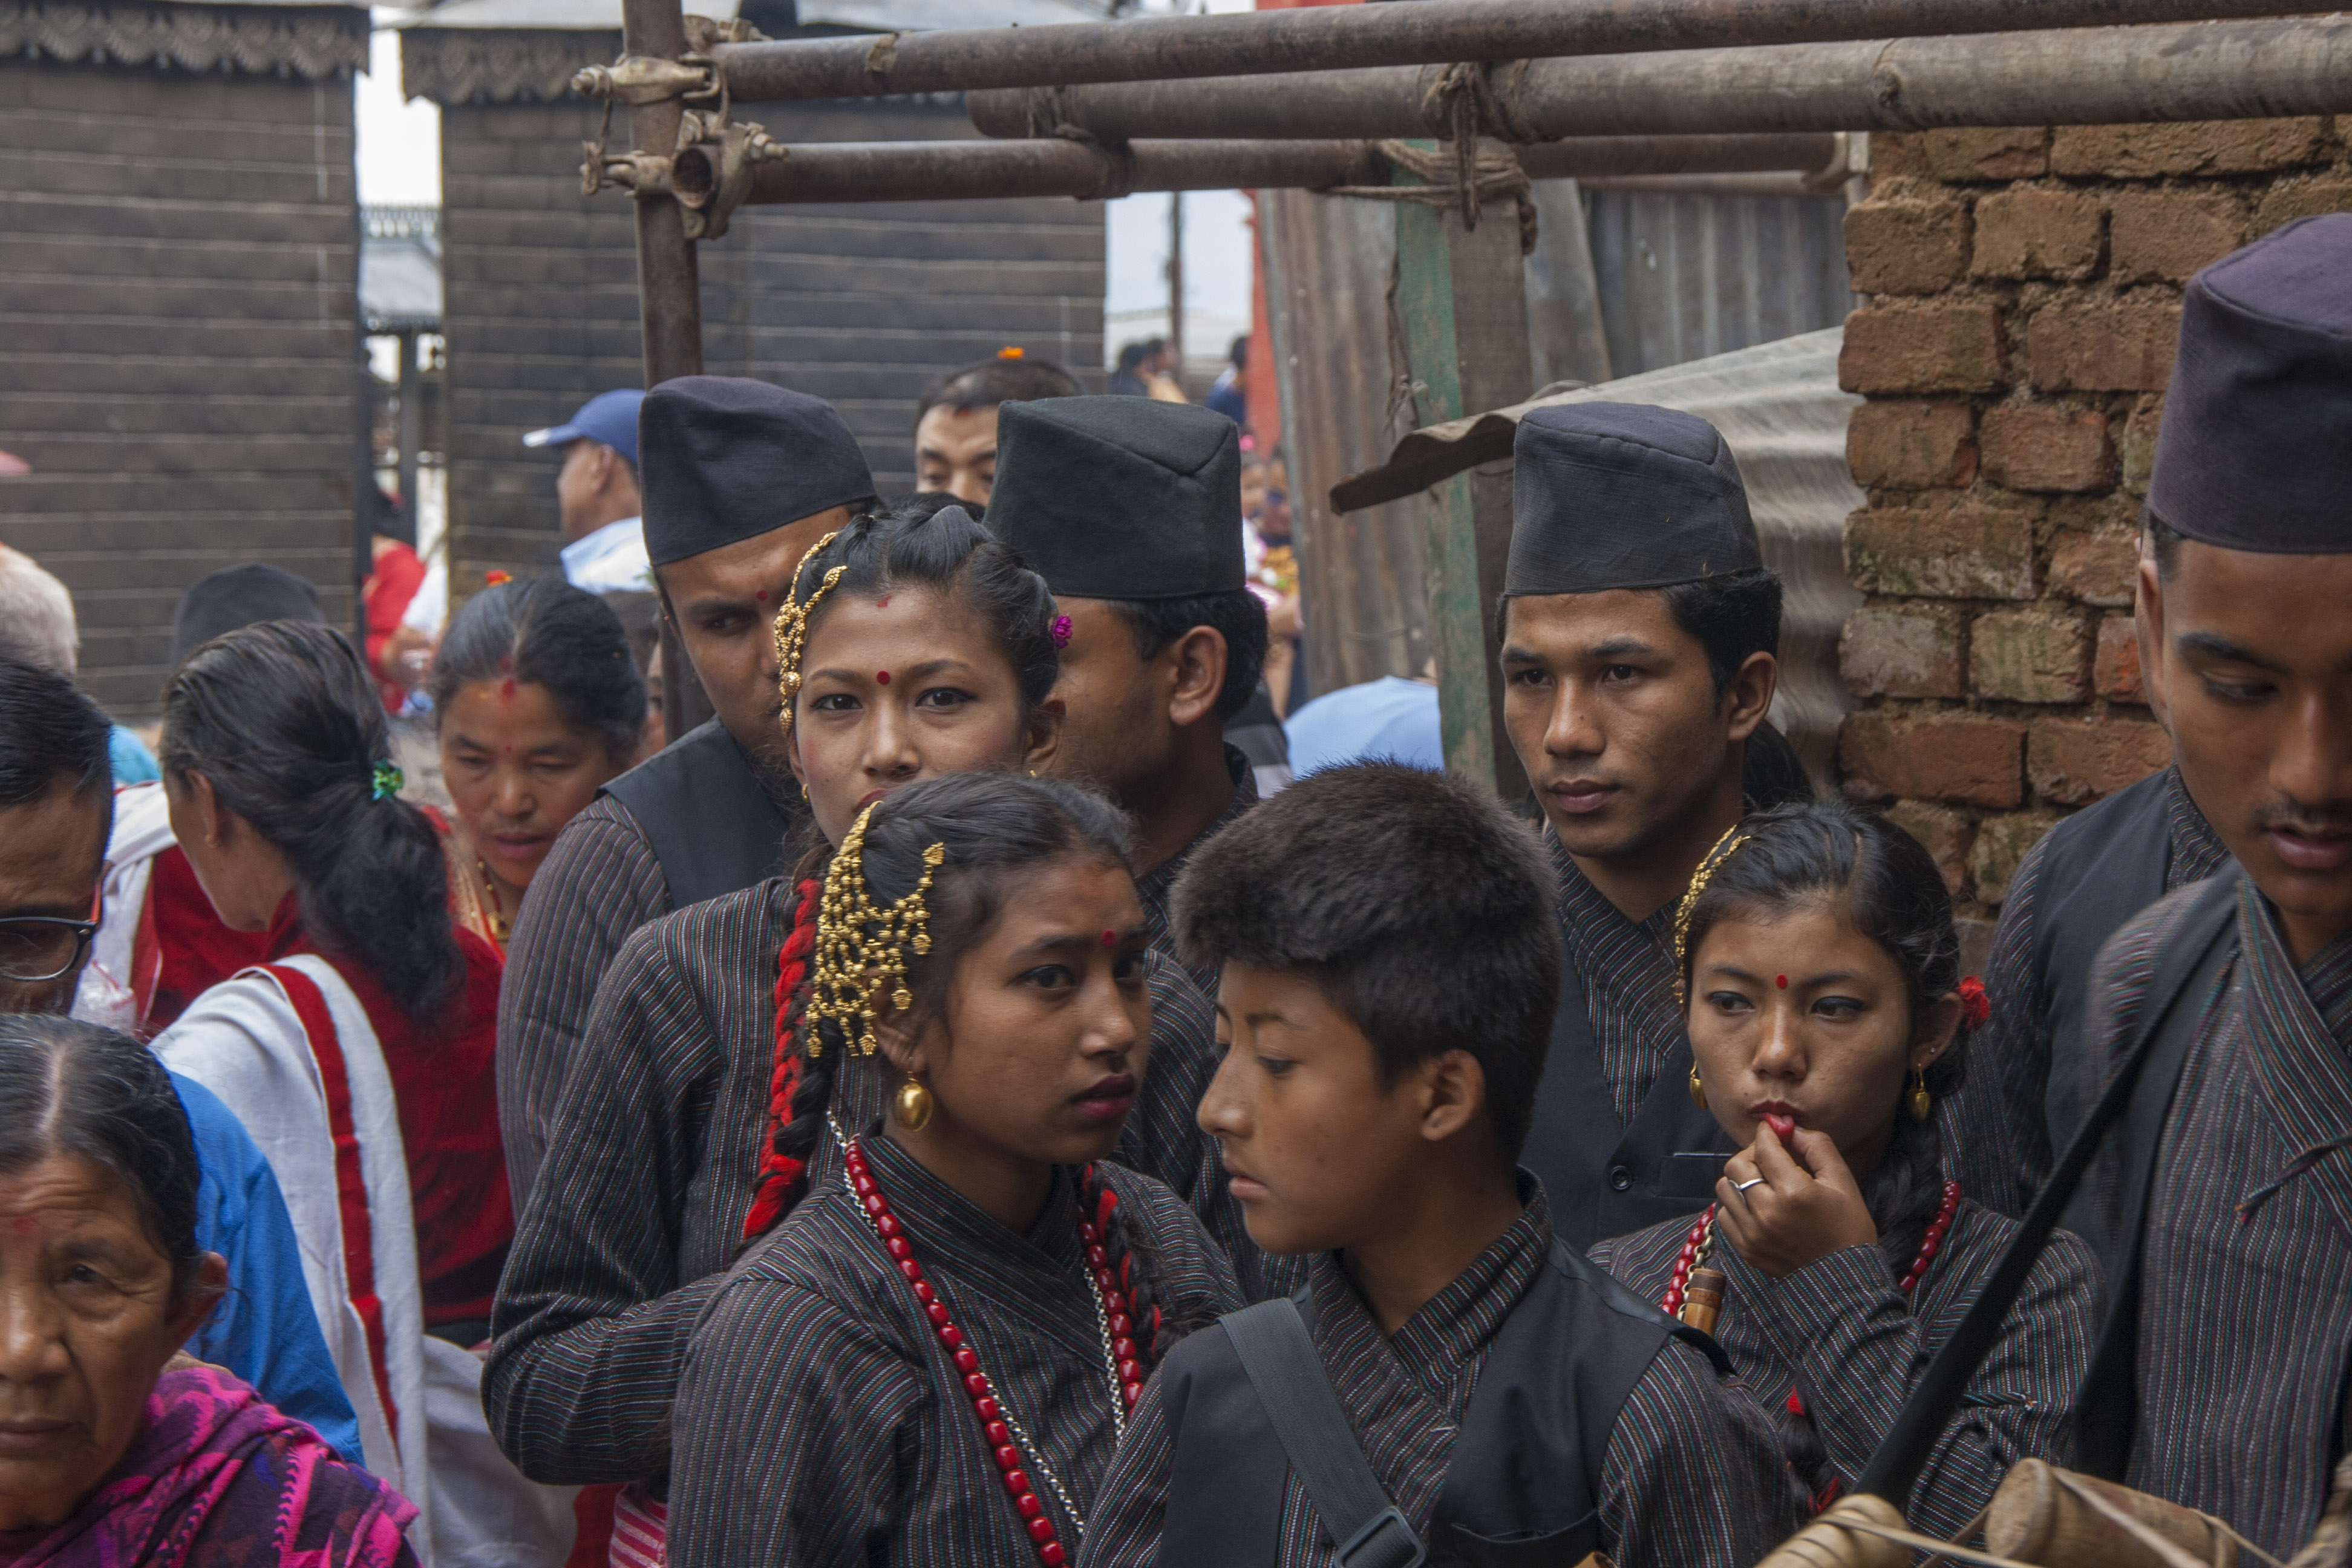 Pre-performance jitters at the Swayambhunath Stupa